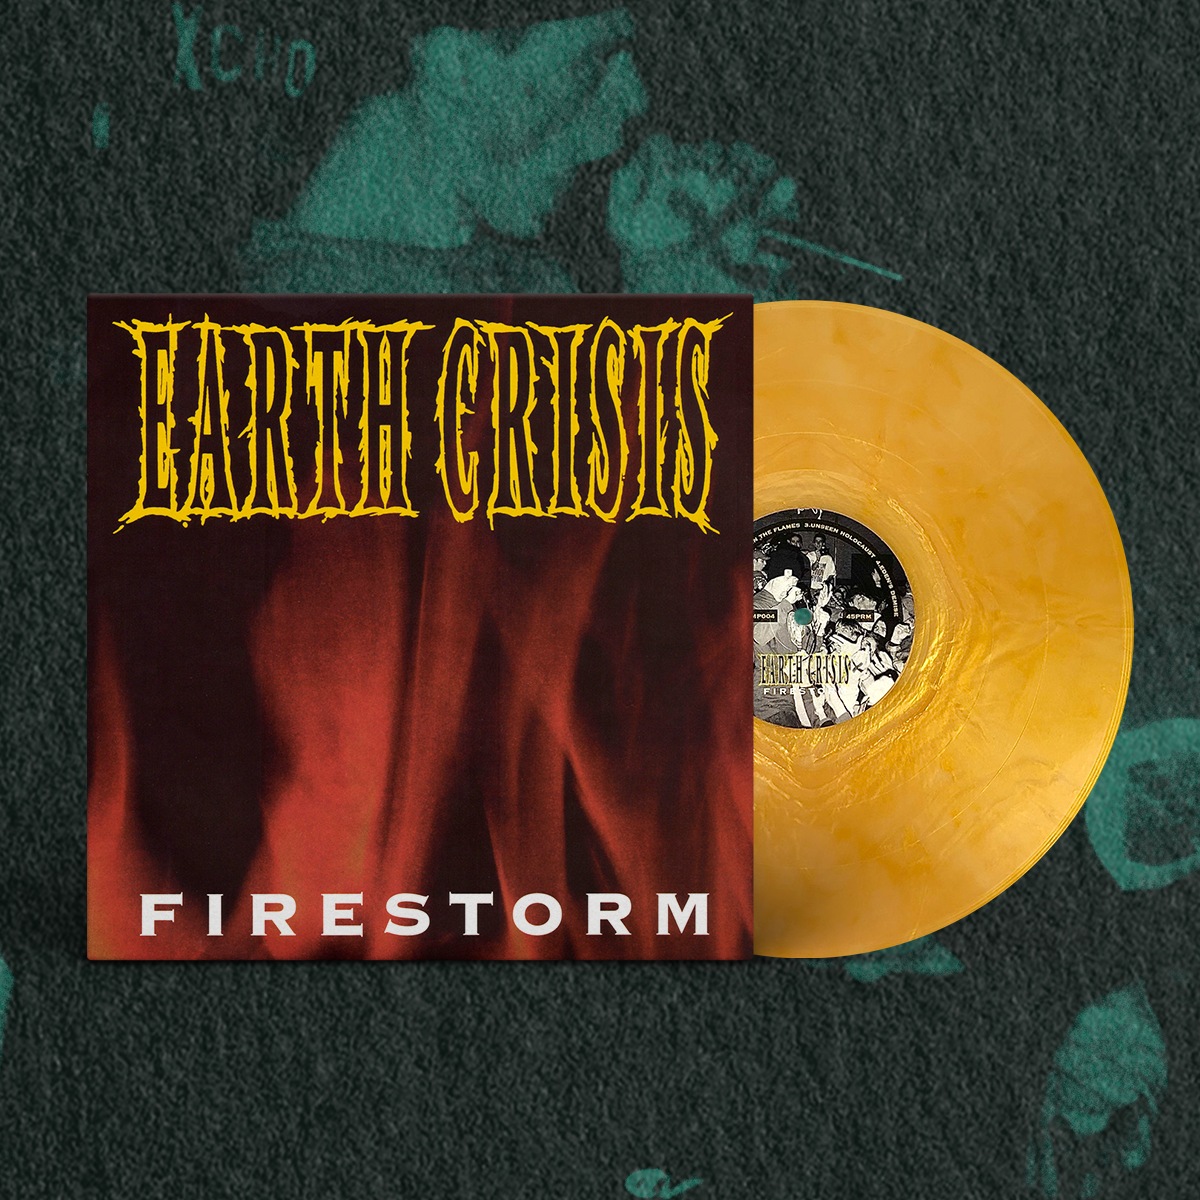 EARTH CRISIS "FIRESTORM" VINYL RECORD